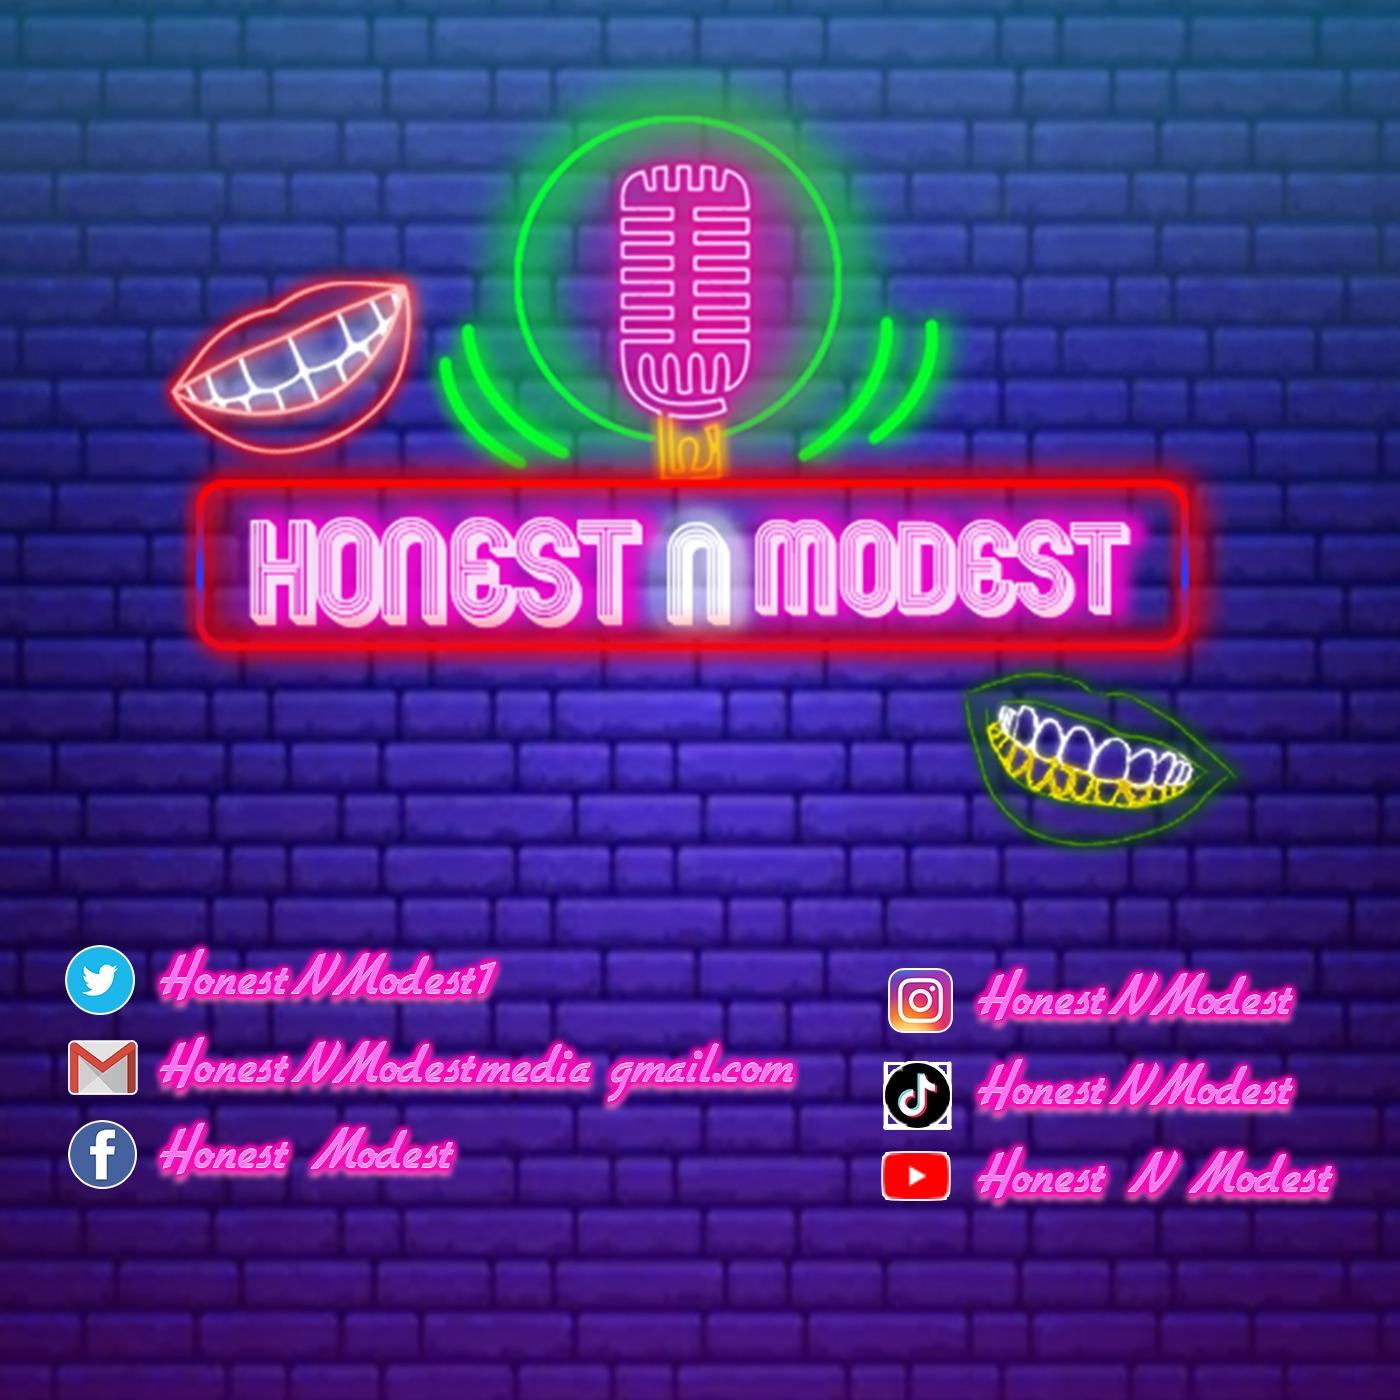 Honest N Modest